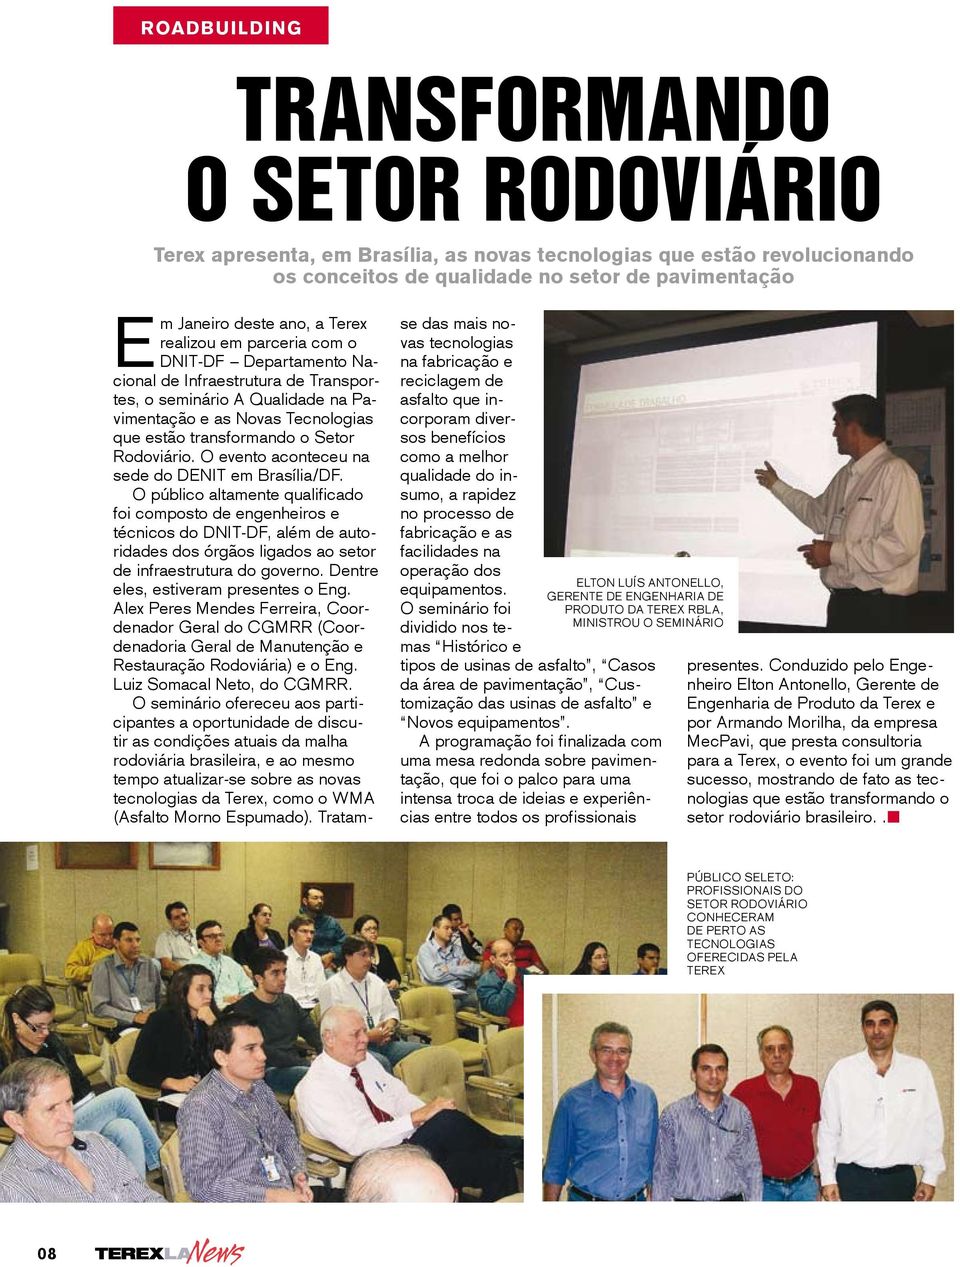 Rodoviário. O evento aconteceu na sede do DENIT em Brasília/DF.